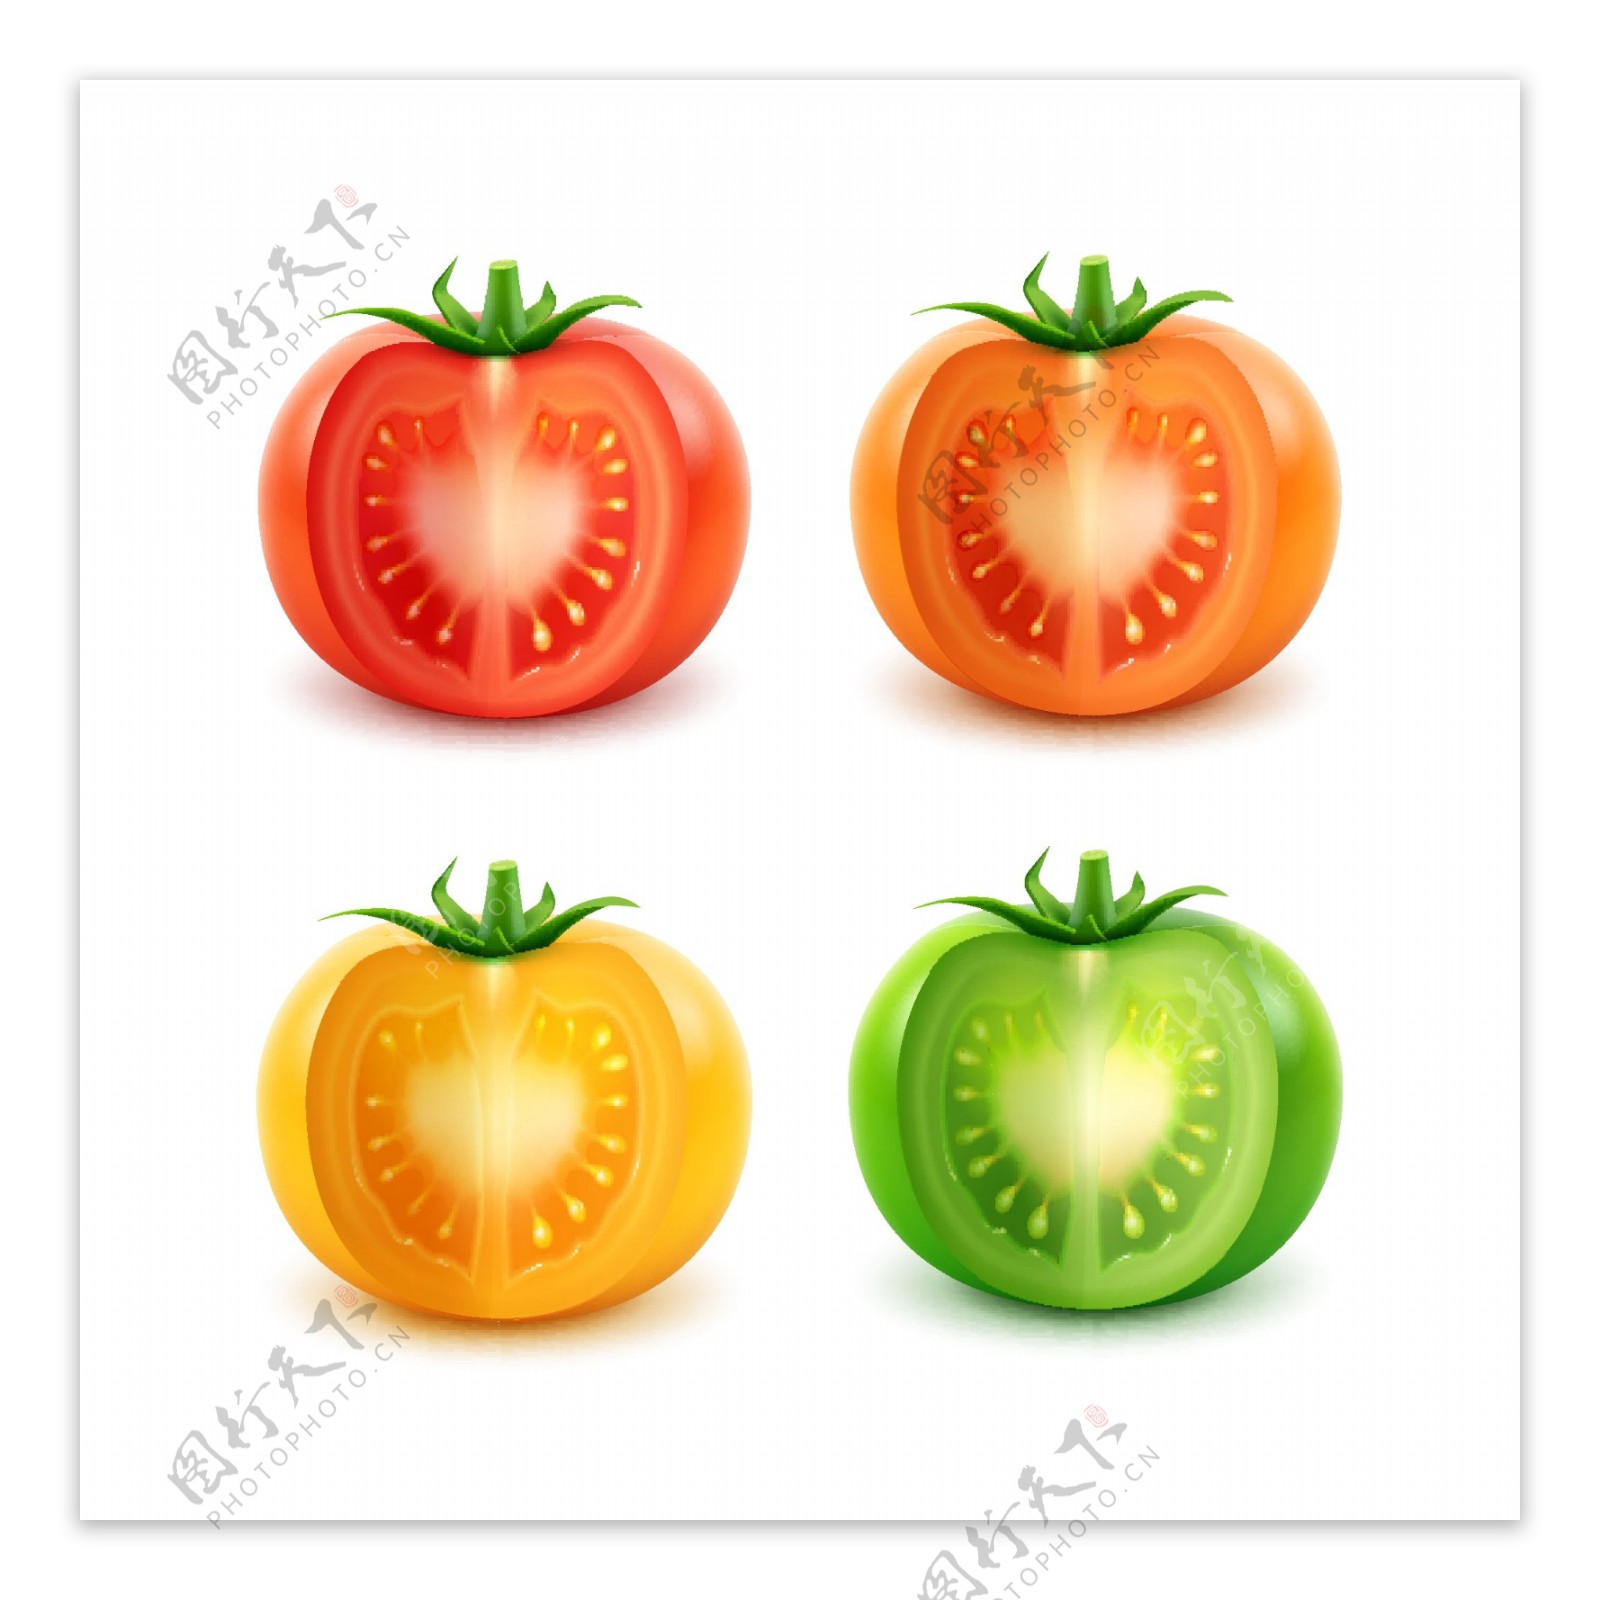 四款不同颜色的西红柿矢量素材